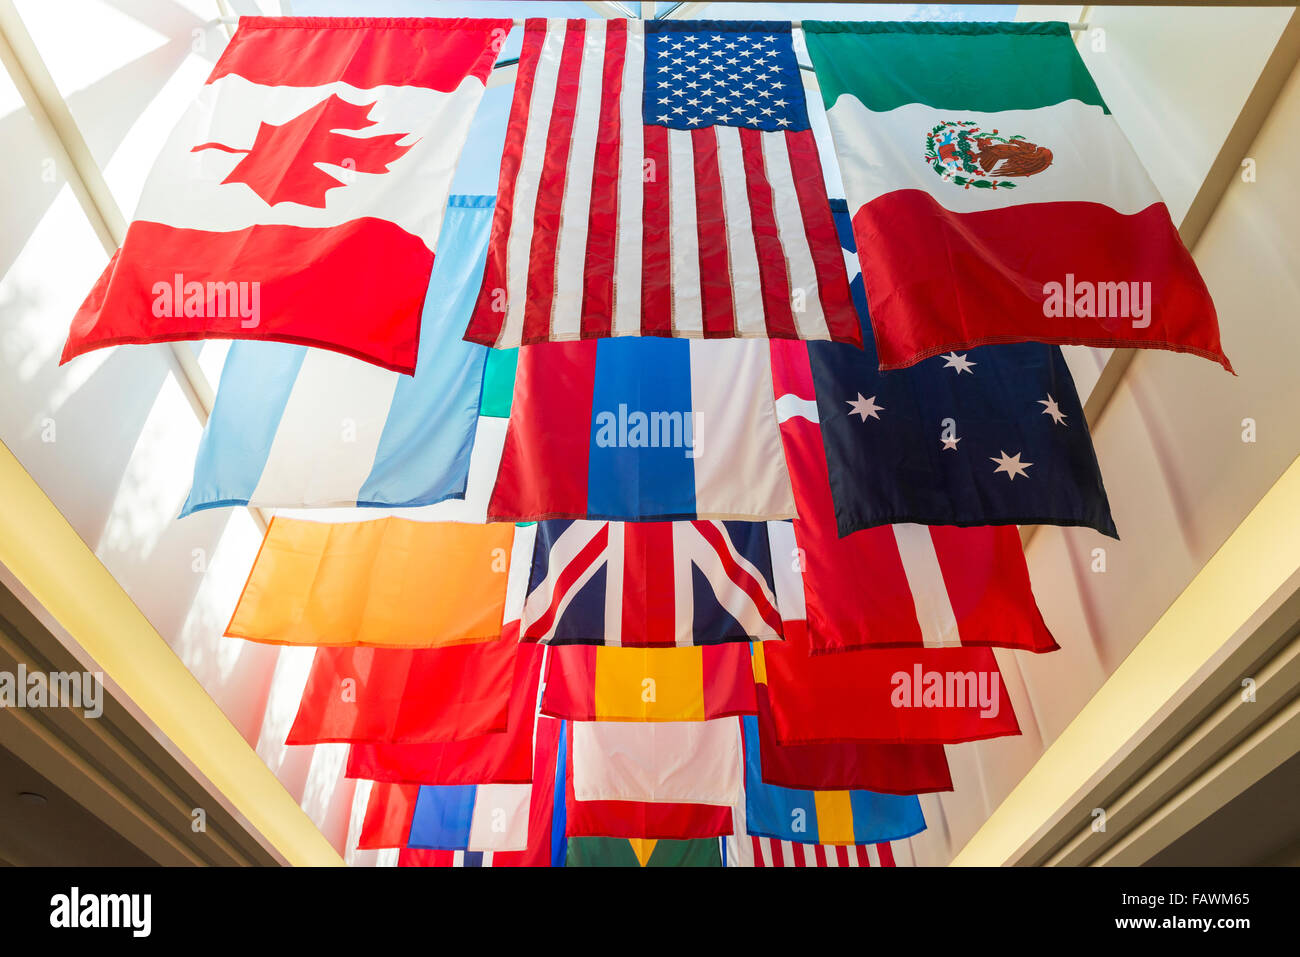 Fahnen aus verschiedenen Ländern hängen, Southern Methodist University; Dallas, Texas, Vereinigte Staaten von Amerika Stockfoto